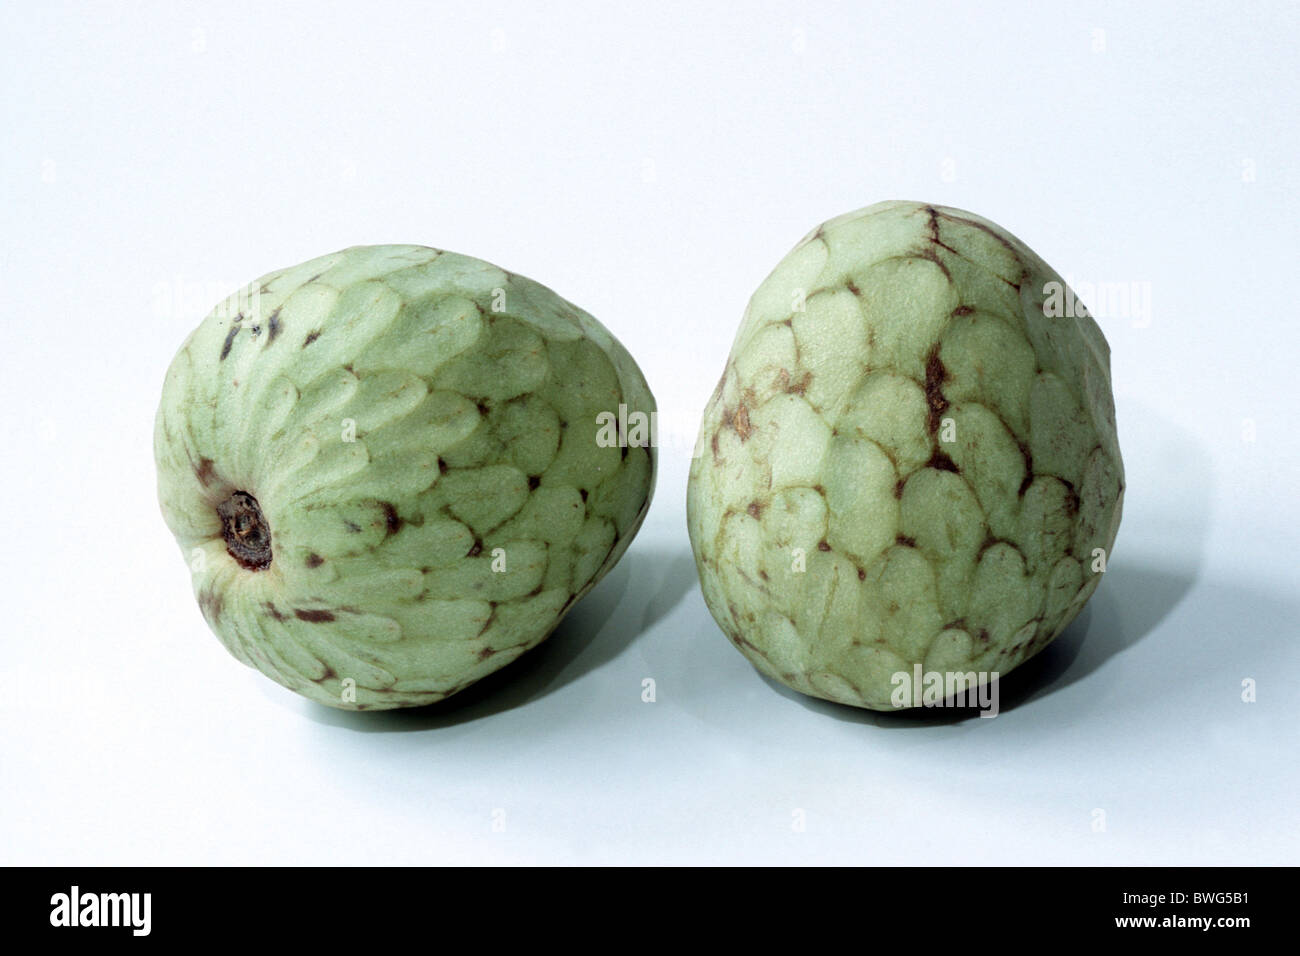 Cherimoya (Annona cherimola), two whole ripe fruit, studio picture. Stock Photo